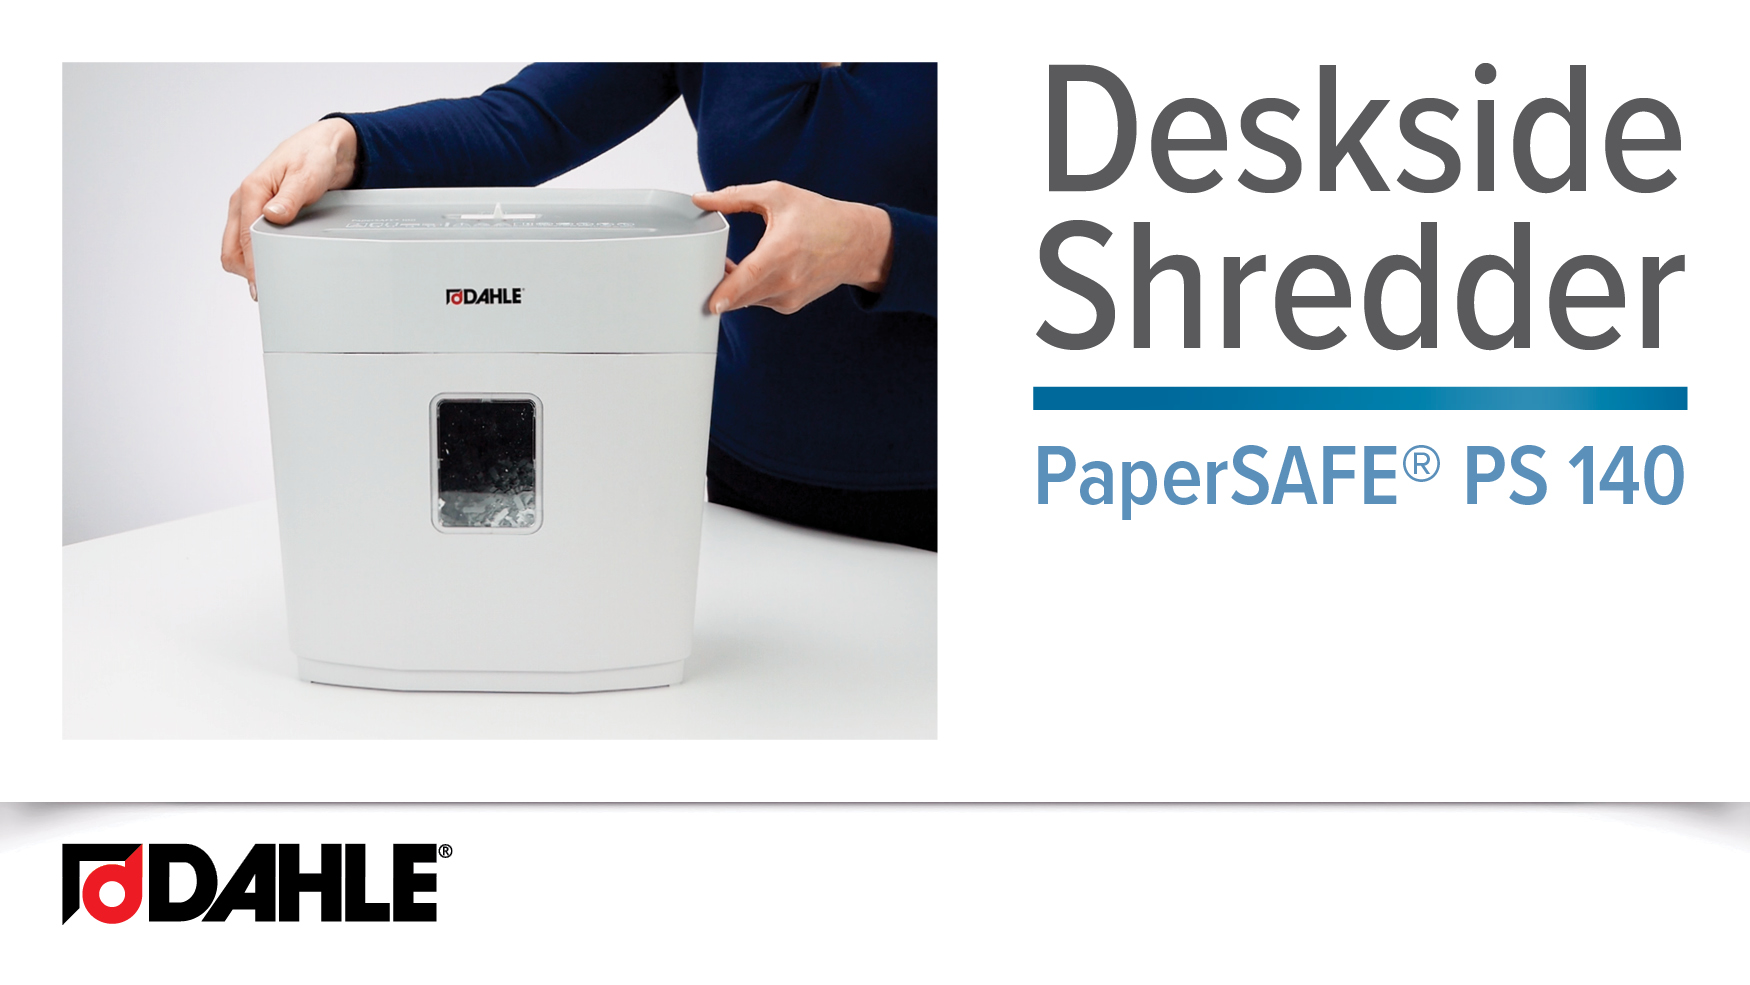 <big><strong>PaperSAFE® PS 140</strong></big><br> Deskside Shredder